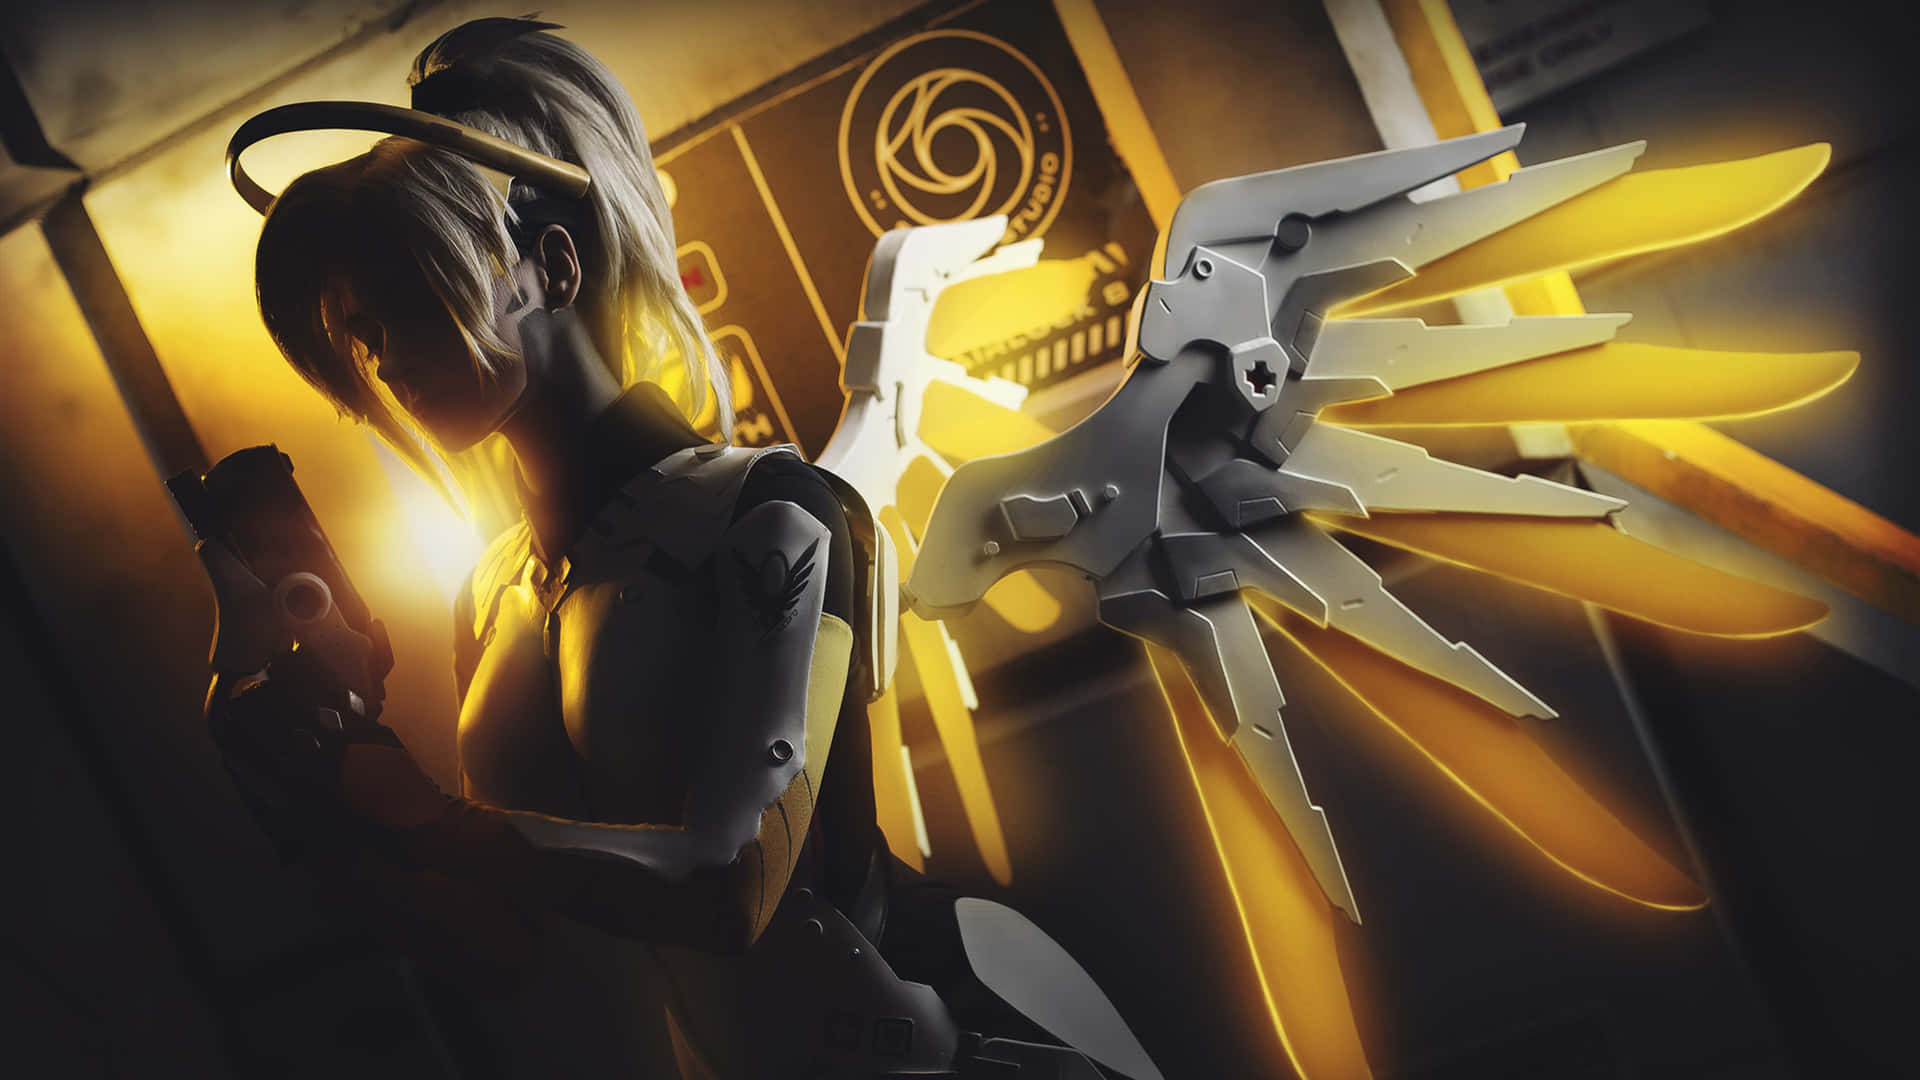 Overwatch Healer - Mercy in Action Wallpaper